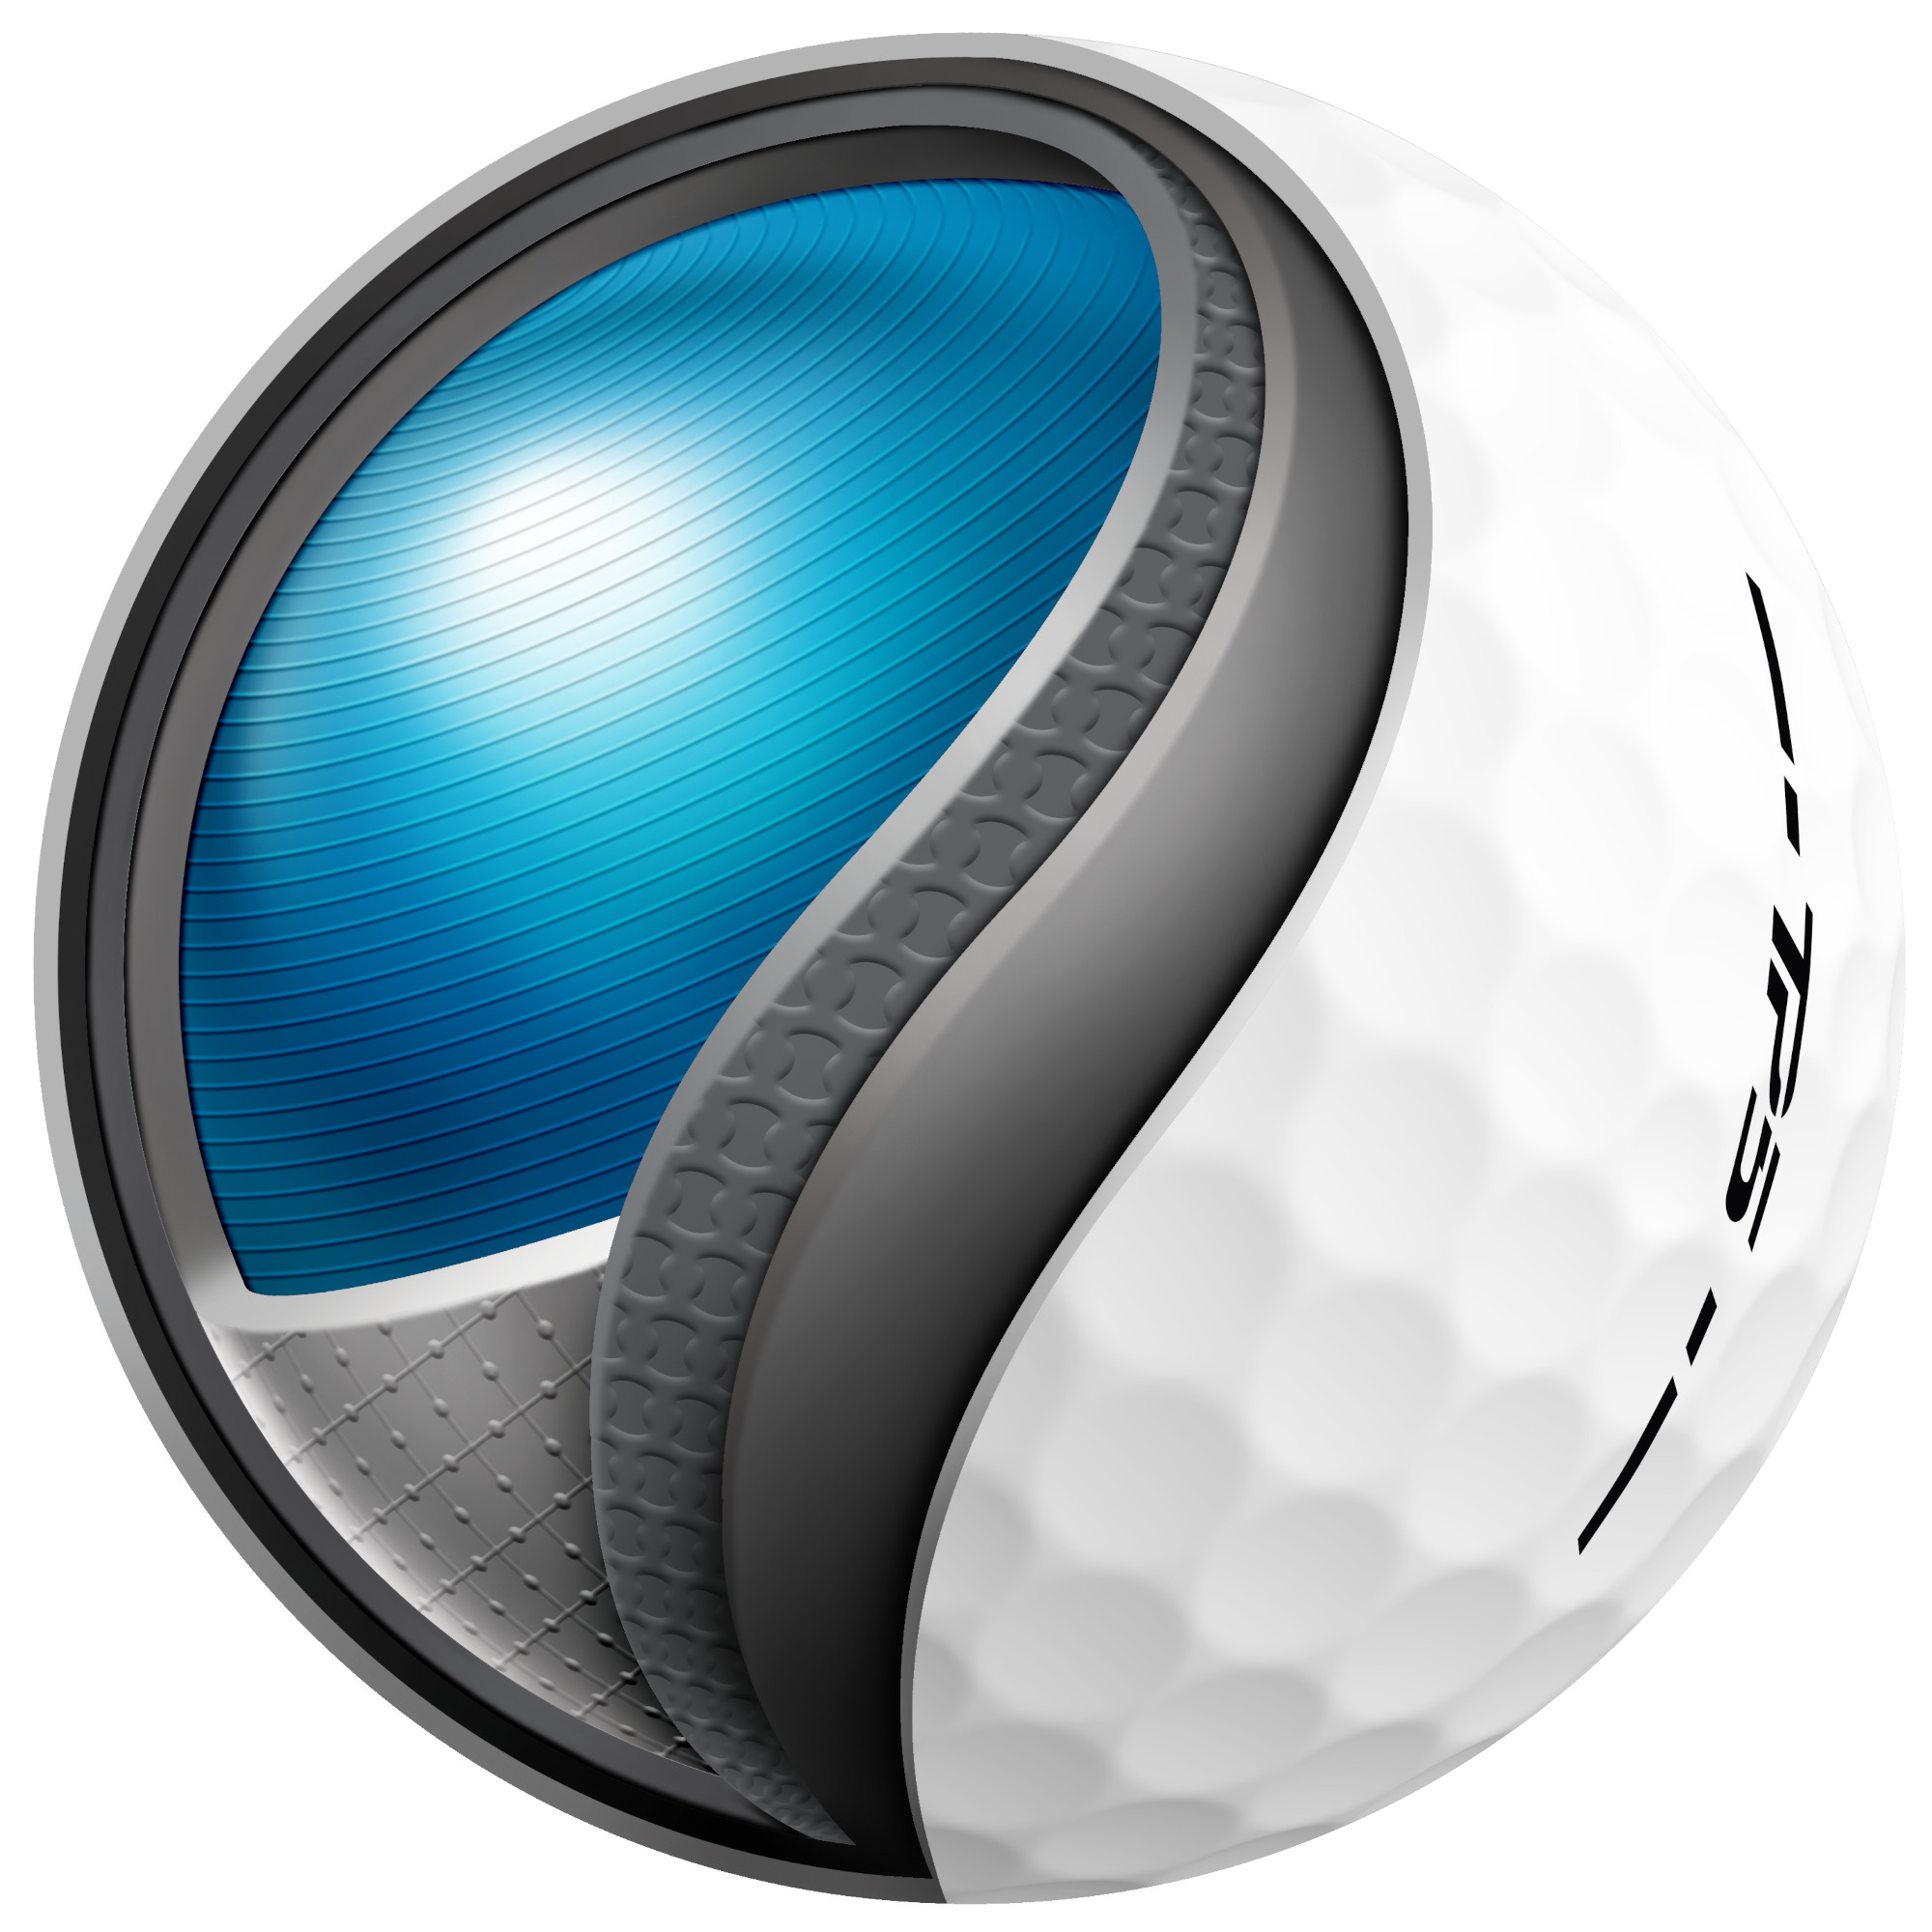 TaylorMade TP5 Golfbälle bedruckt, weiss (VPE à 12 Bälle)